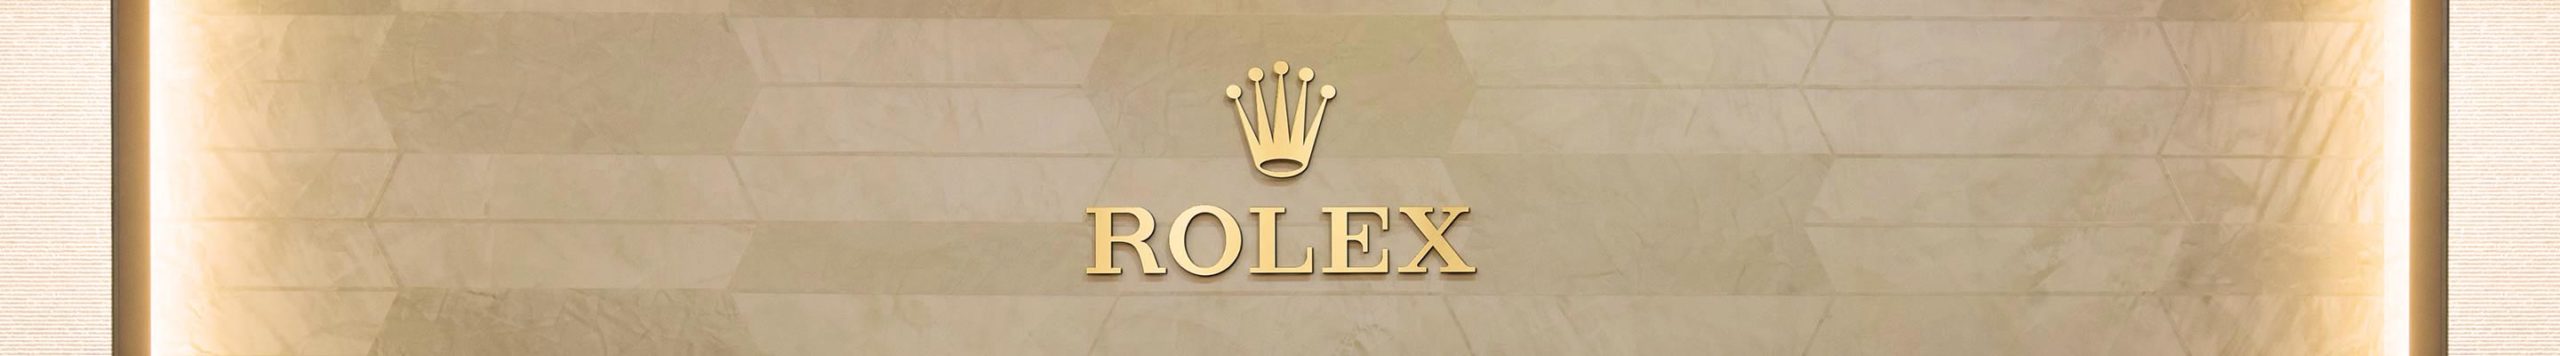 Rolex Vietnam DAFC Boutique Banner Desktop Scaled